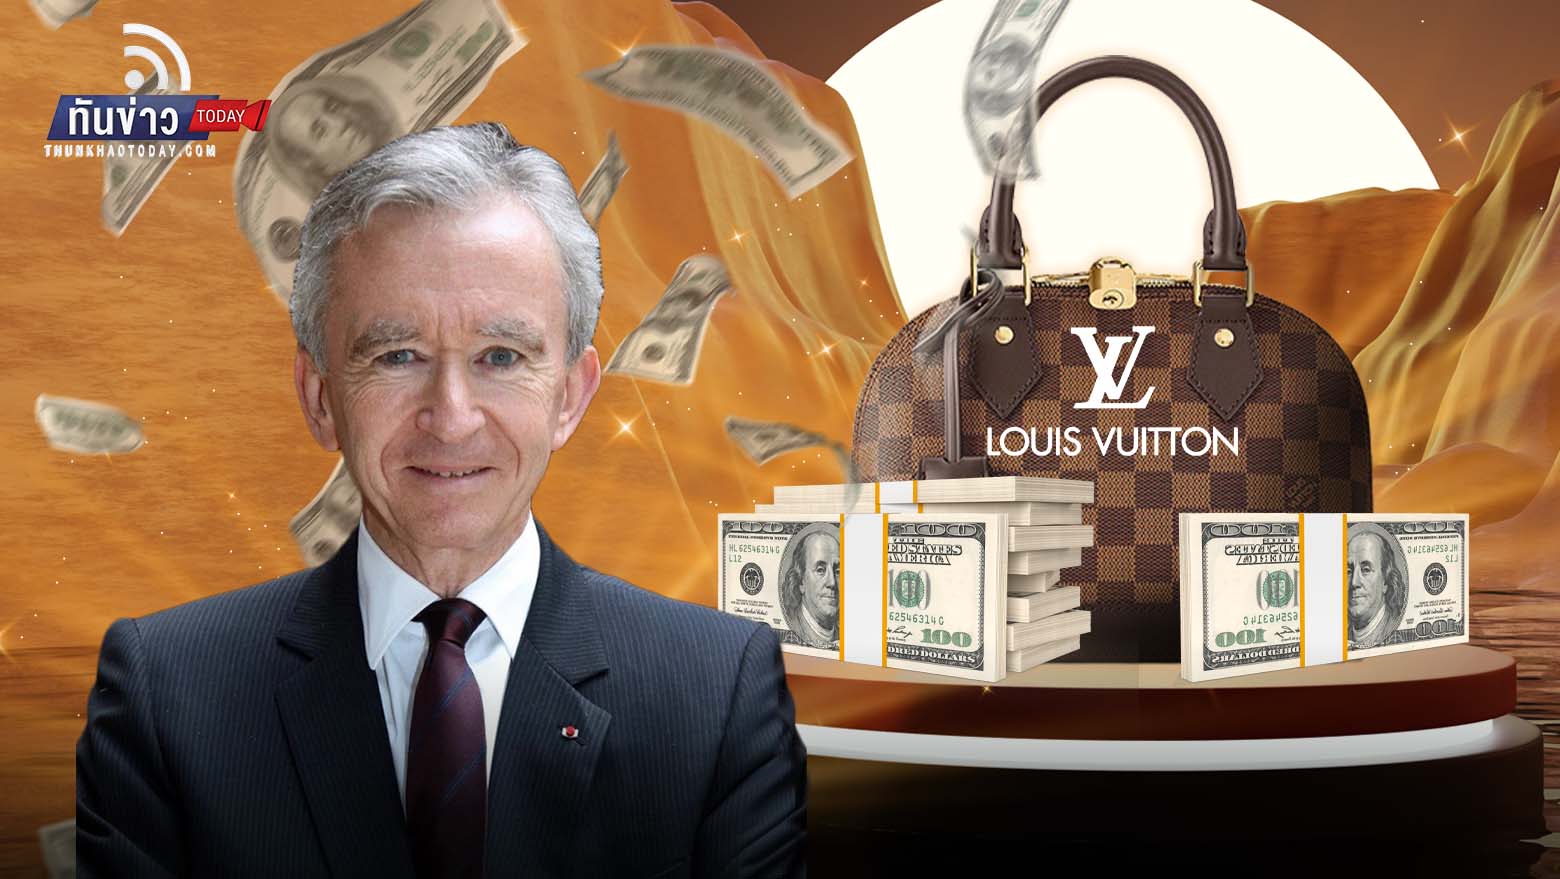 ยอดขายแบรนด์หรู Louis Vuitton โตแกร่ง หนุนเบอร์นาร์ด อาร์โนลต์ เจ้าของแบรนด์ รวยทะลุ 200,000 ล้านเหรียญ สู่มหาเศรษฐีอันดับ 1 ของโลก